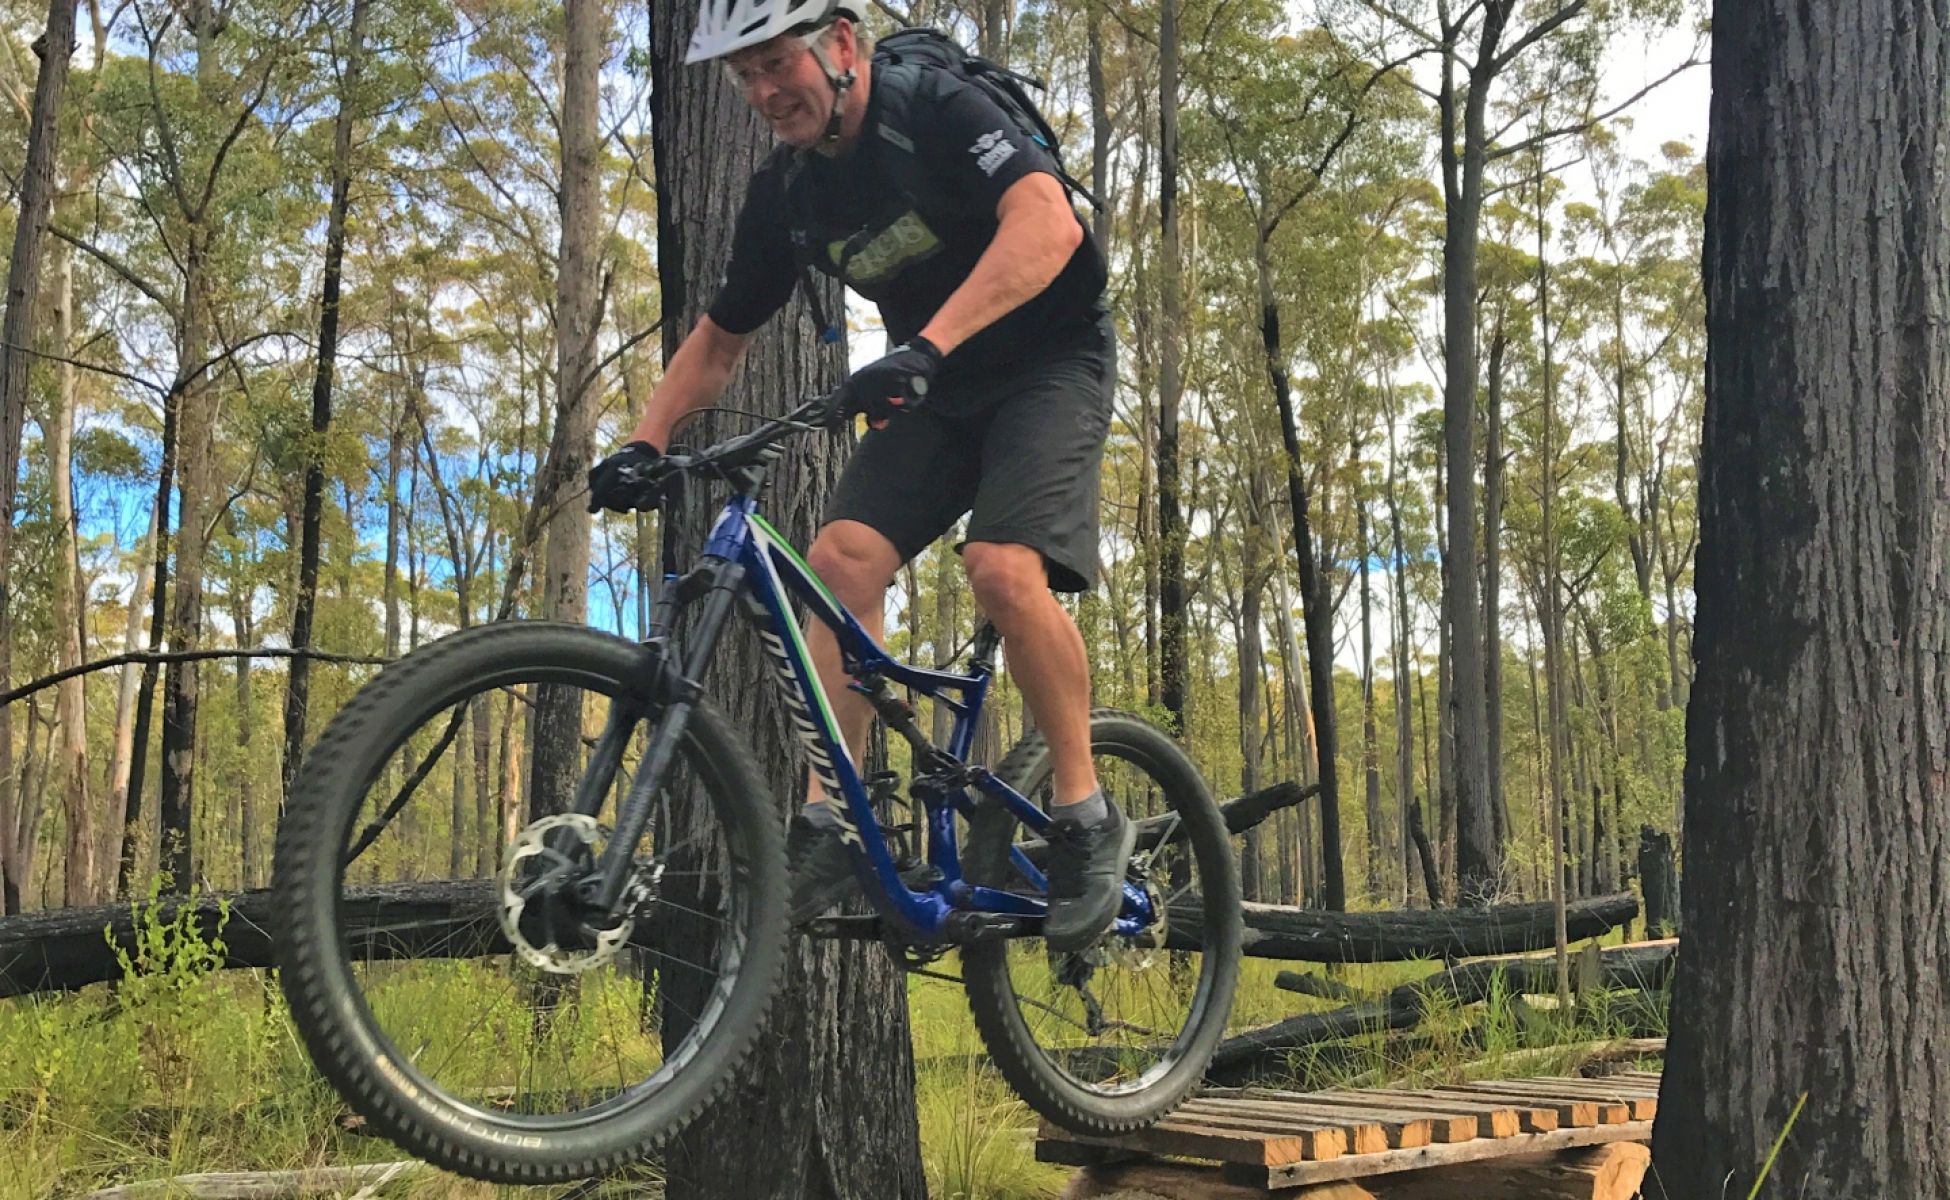 An older man rides a mountain bike over a short jump